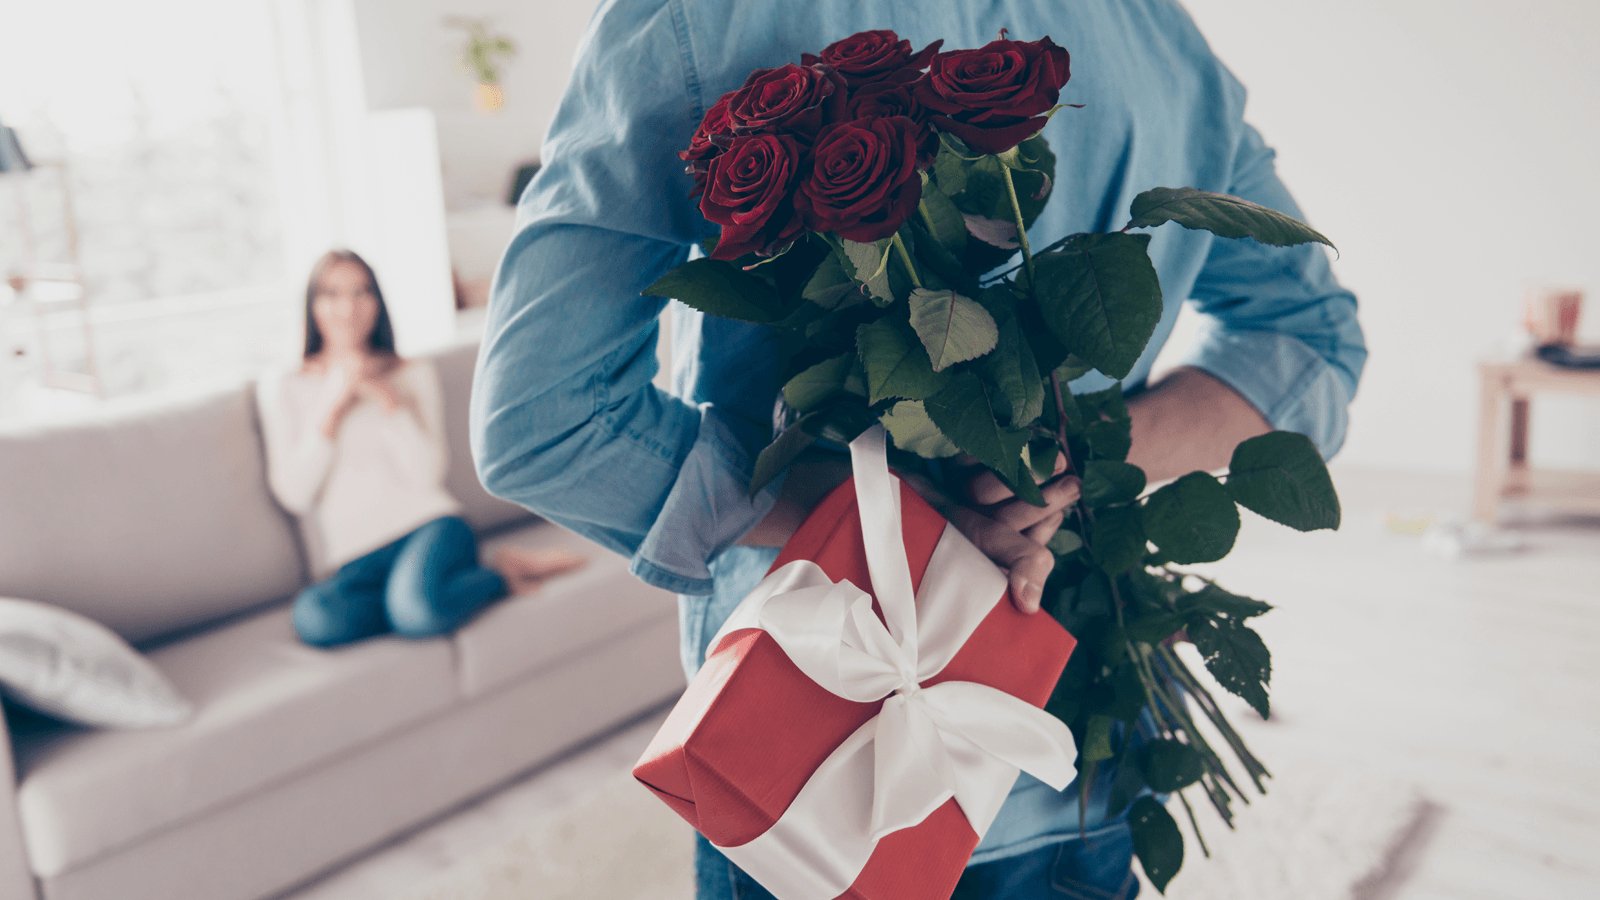 10 điều bất kỳ người vợ nào cũng mong muốn ở chồng mình 9